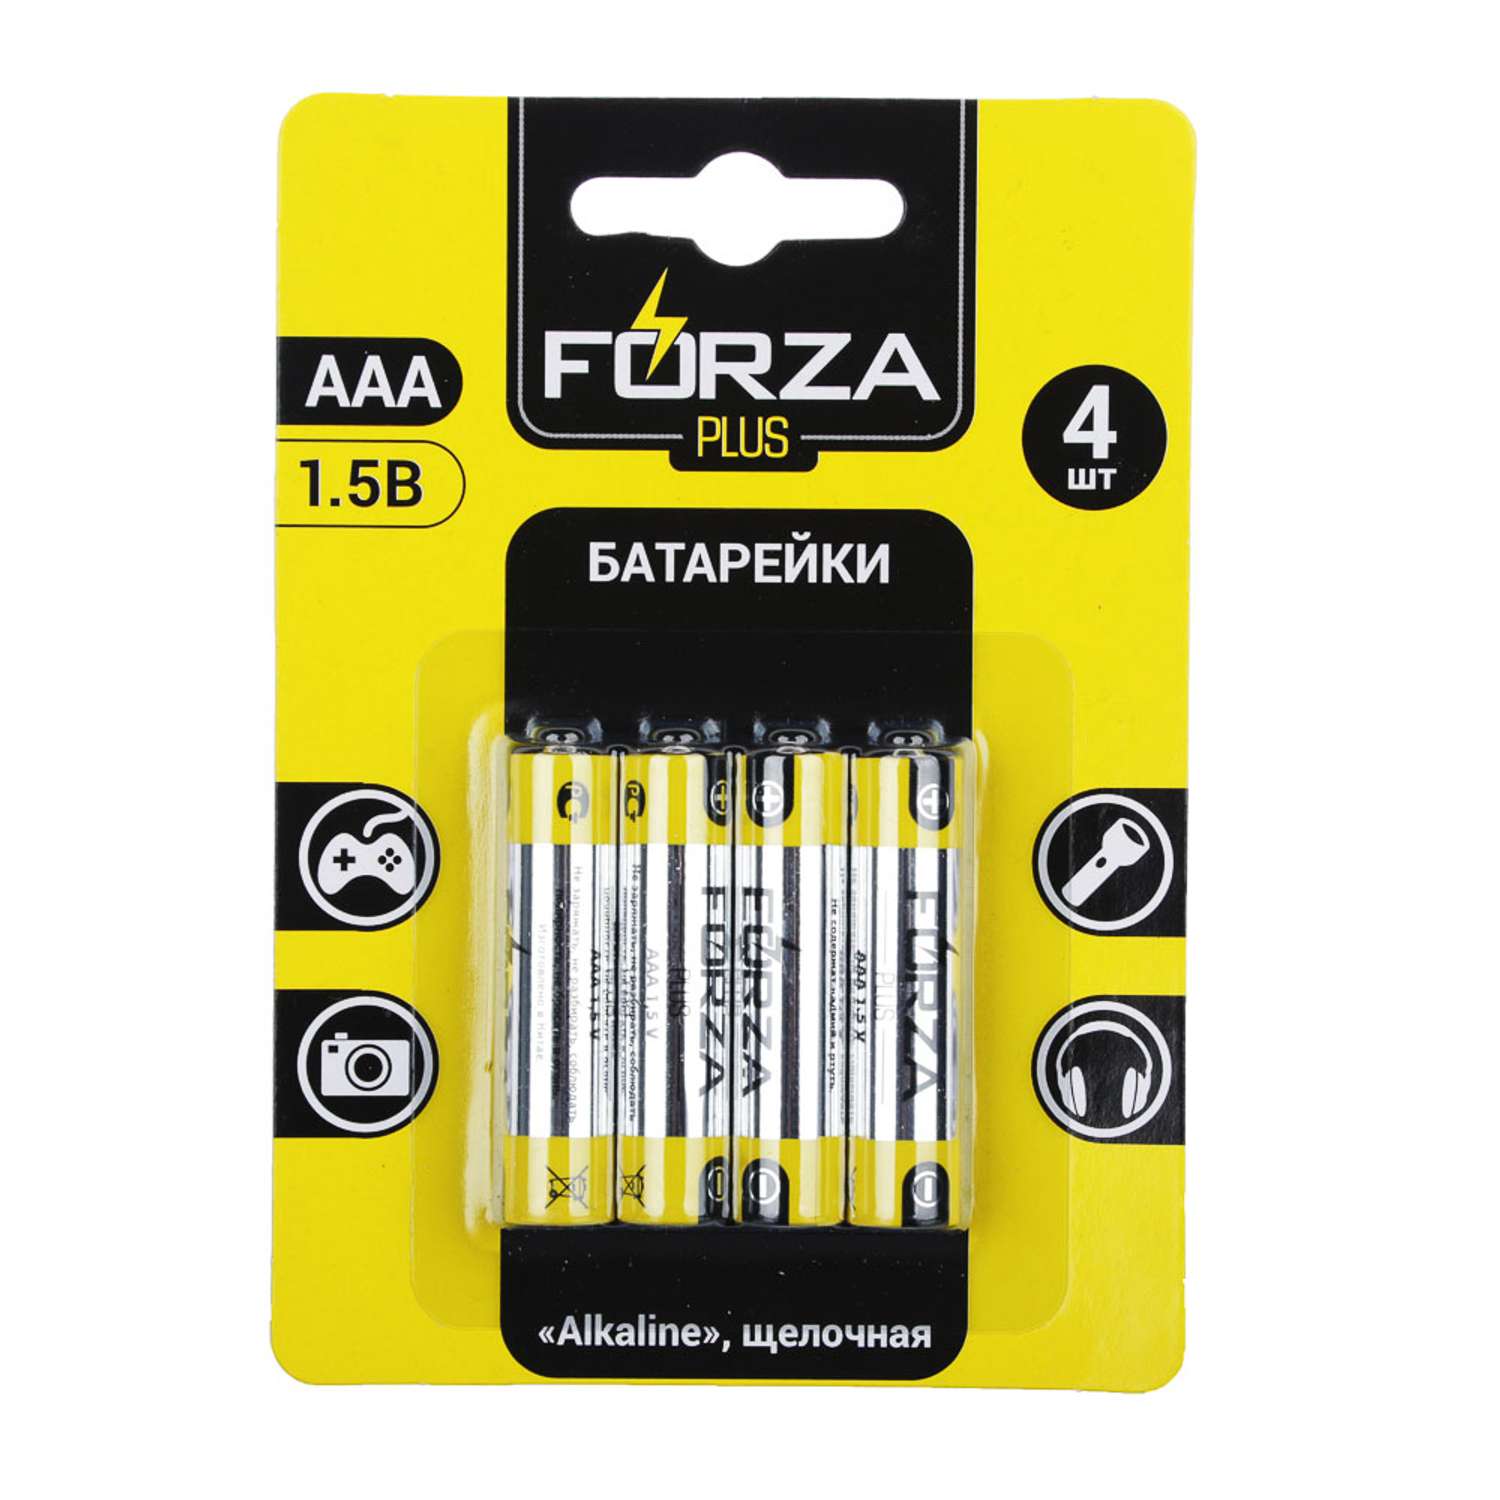 Батарейки FORZA AAA LR03 4 штуки в блистере - фото 1